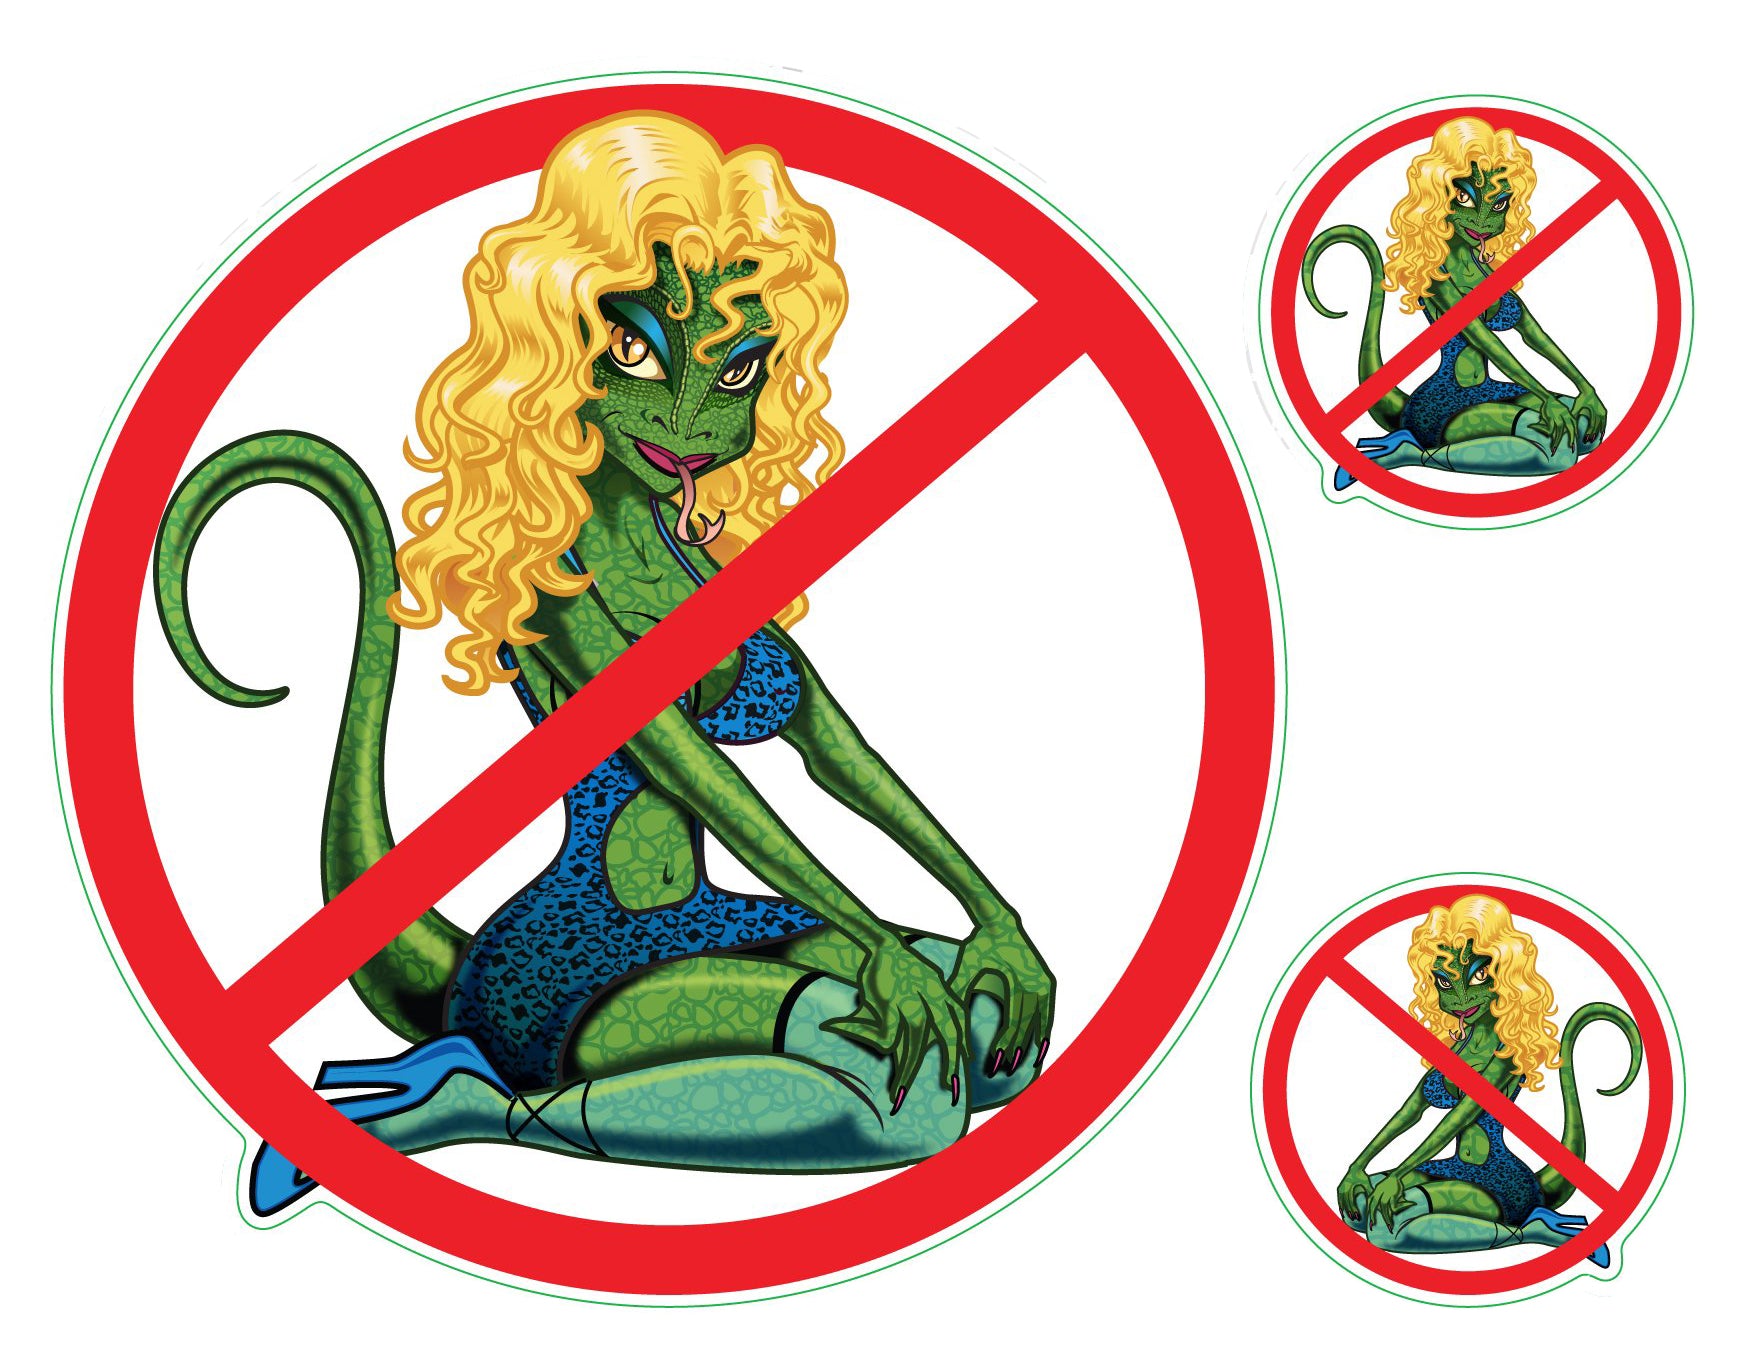 No Lot Lizards - Lot Lizard - Sticker